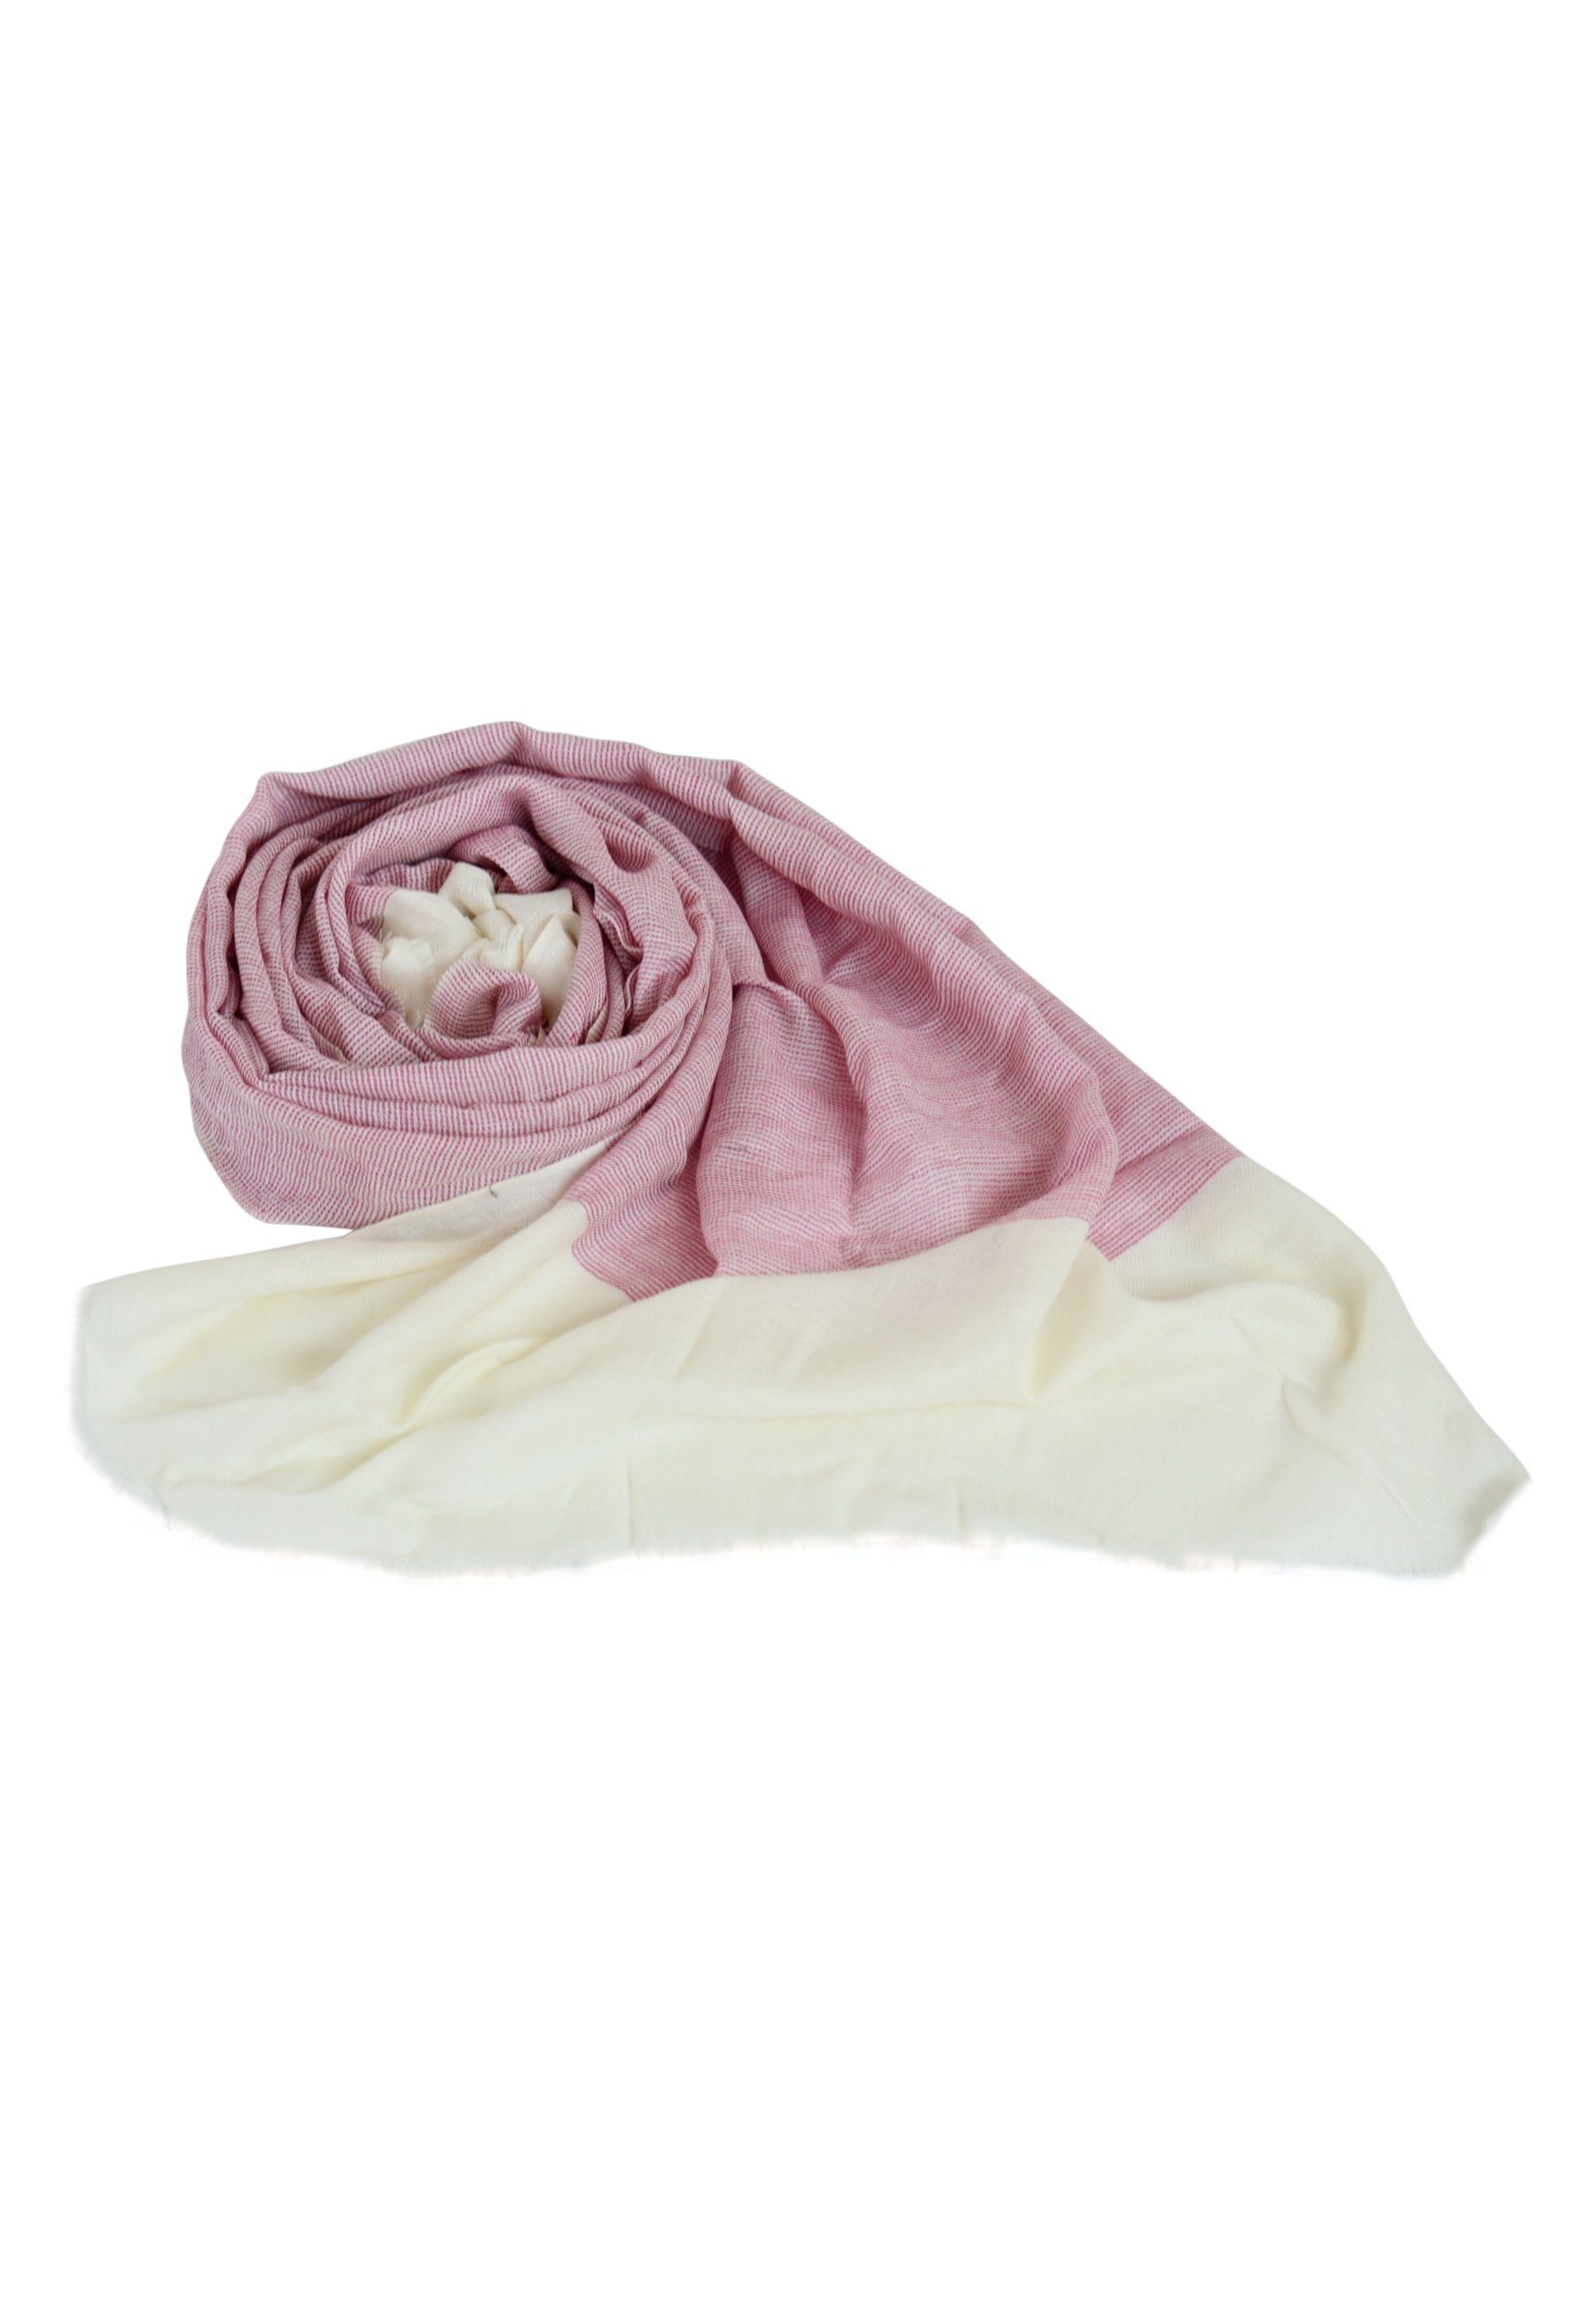 Blue Chilli Schal Erhöhen Sie Ihren Stil: Kaschmir-Wollschal mit zweifarbiger Eleganz, Unverkennbar eleganter Schal aus Wolle mit einzigartigem Aussehen rosa